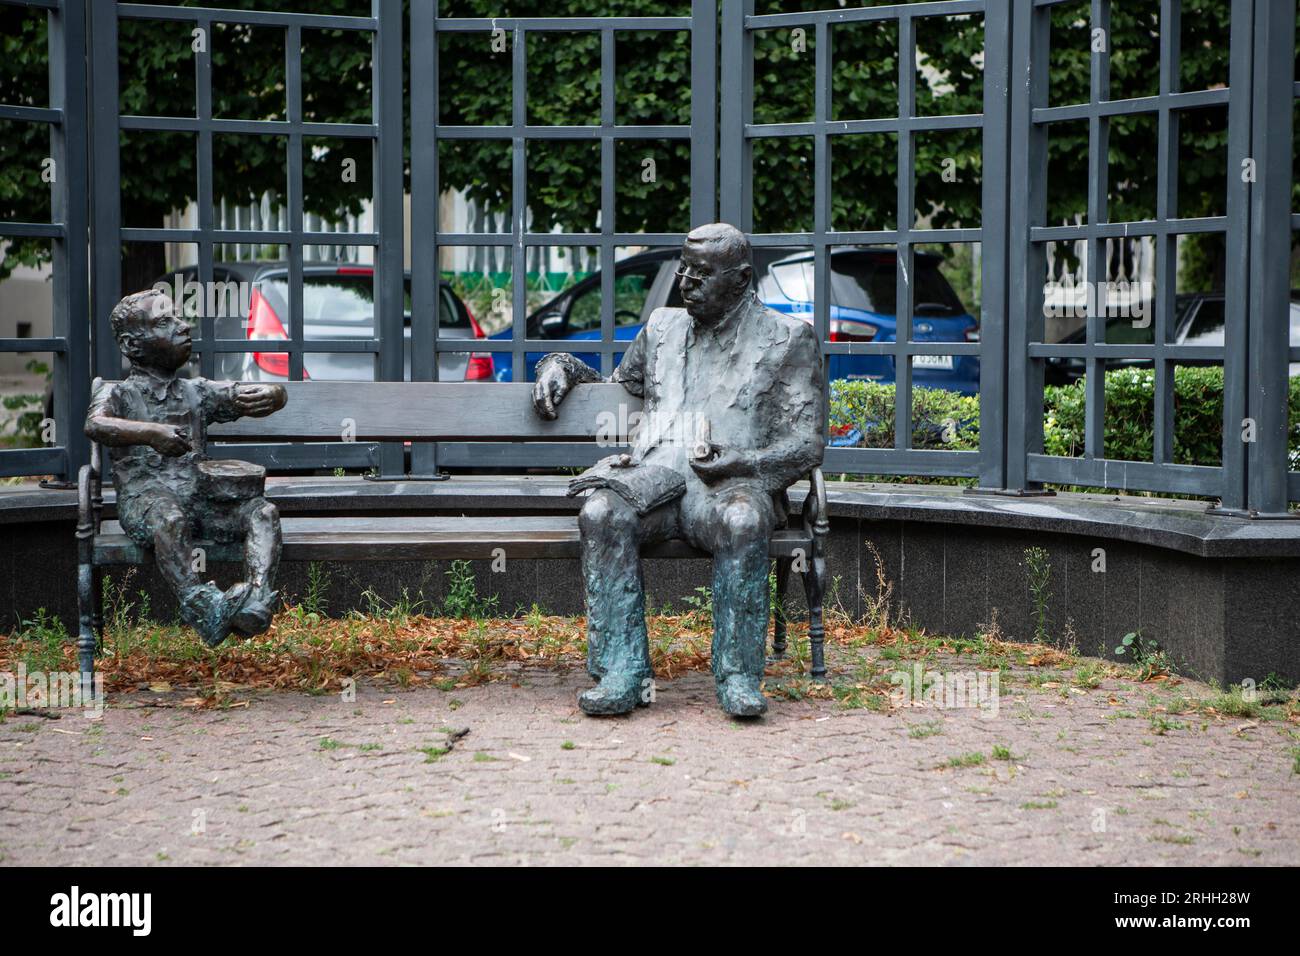 Das Denkmal zeigt Günther Grass, sitzend auf einer Bank, während neben ihm Oskar Matzerath, die zentrale Figur aus seinem berühmten Roman "Die Blechtr Stock Photo